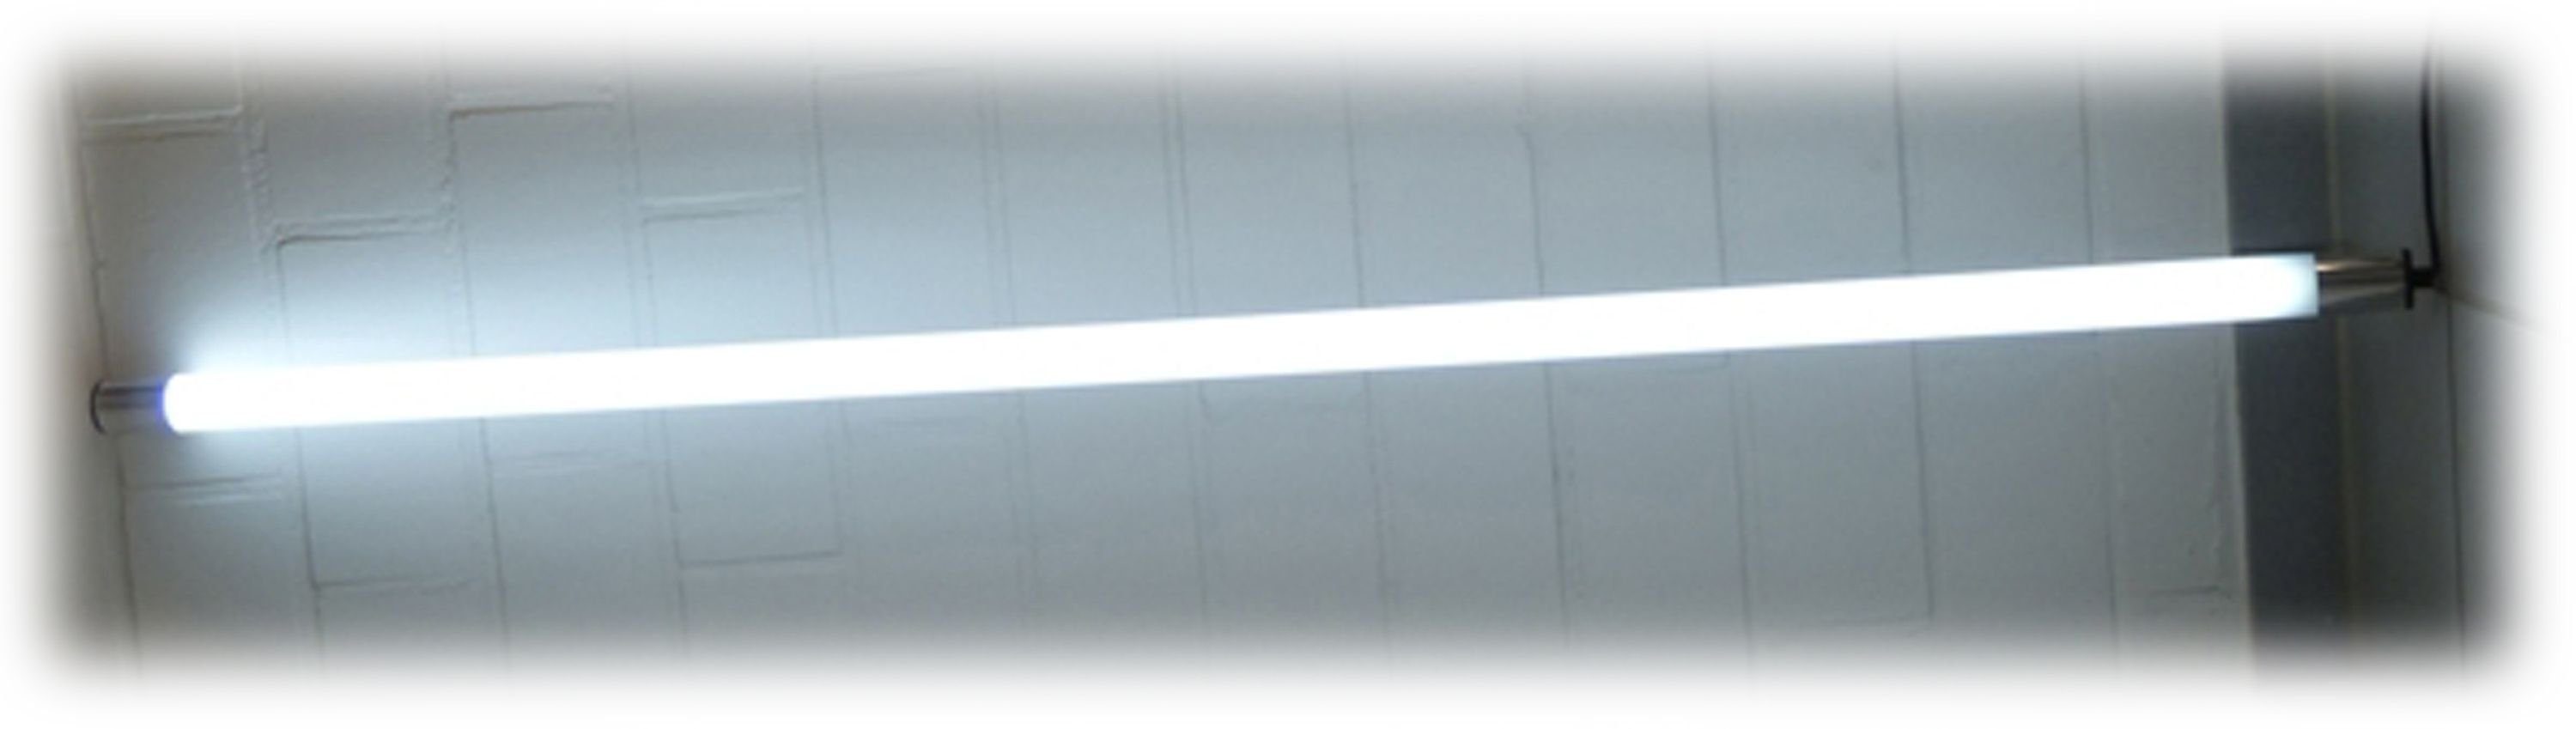 XENON LED Außen-Wandleuchte 1519 LED Gabionen Leuchte mit Kunststoff-Röhre 153cm Kalt Weiß, LED Technik, Xenon / Kalt Weiß